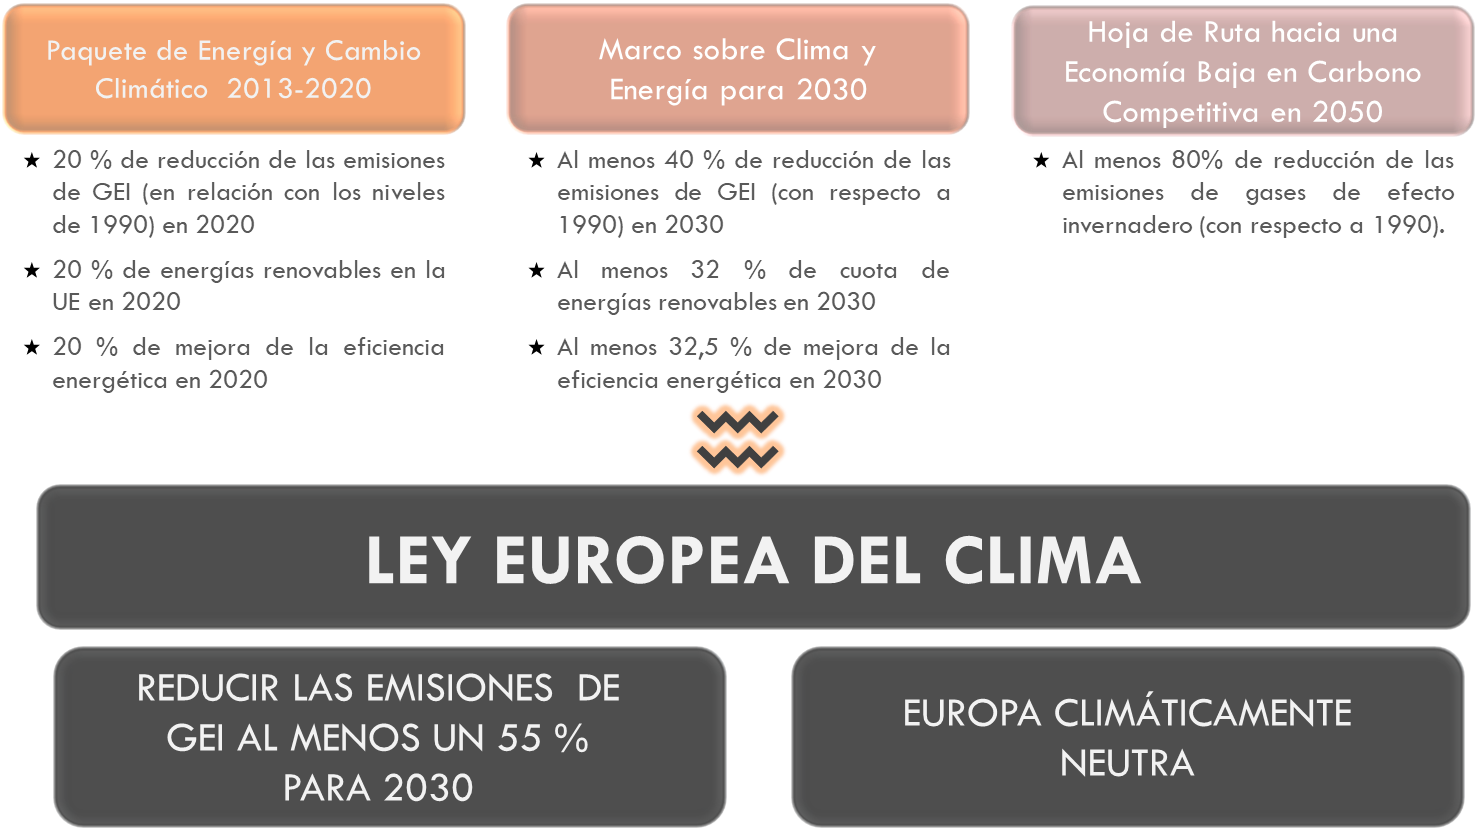 igura2 Evolución de losobjetivos en materia de energías renovables,eficiencia energética y reducción de emisiones de gases de efectoinvernadero en la normativa europea35. La explicación del gráfico se detalla a continuación de la imagen.